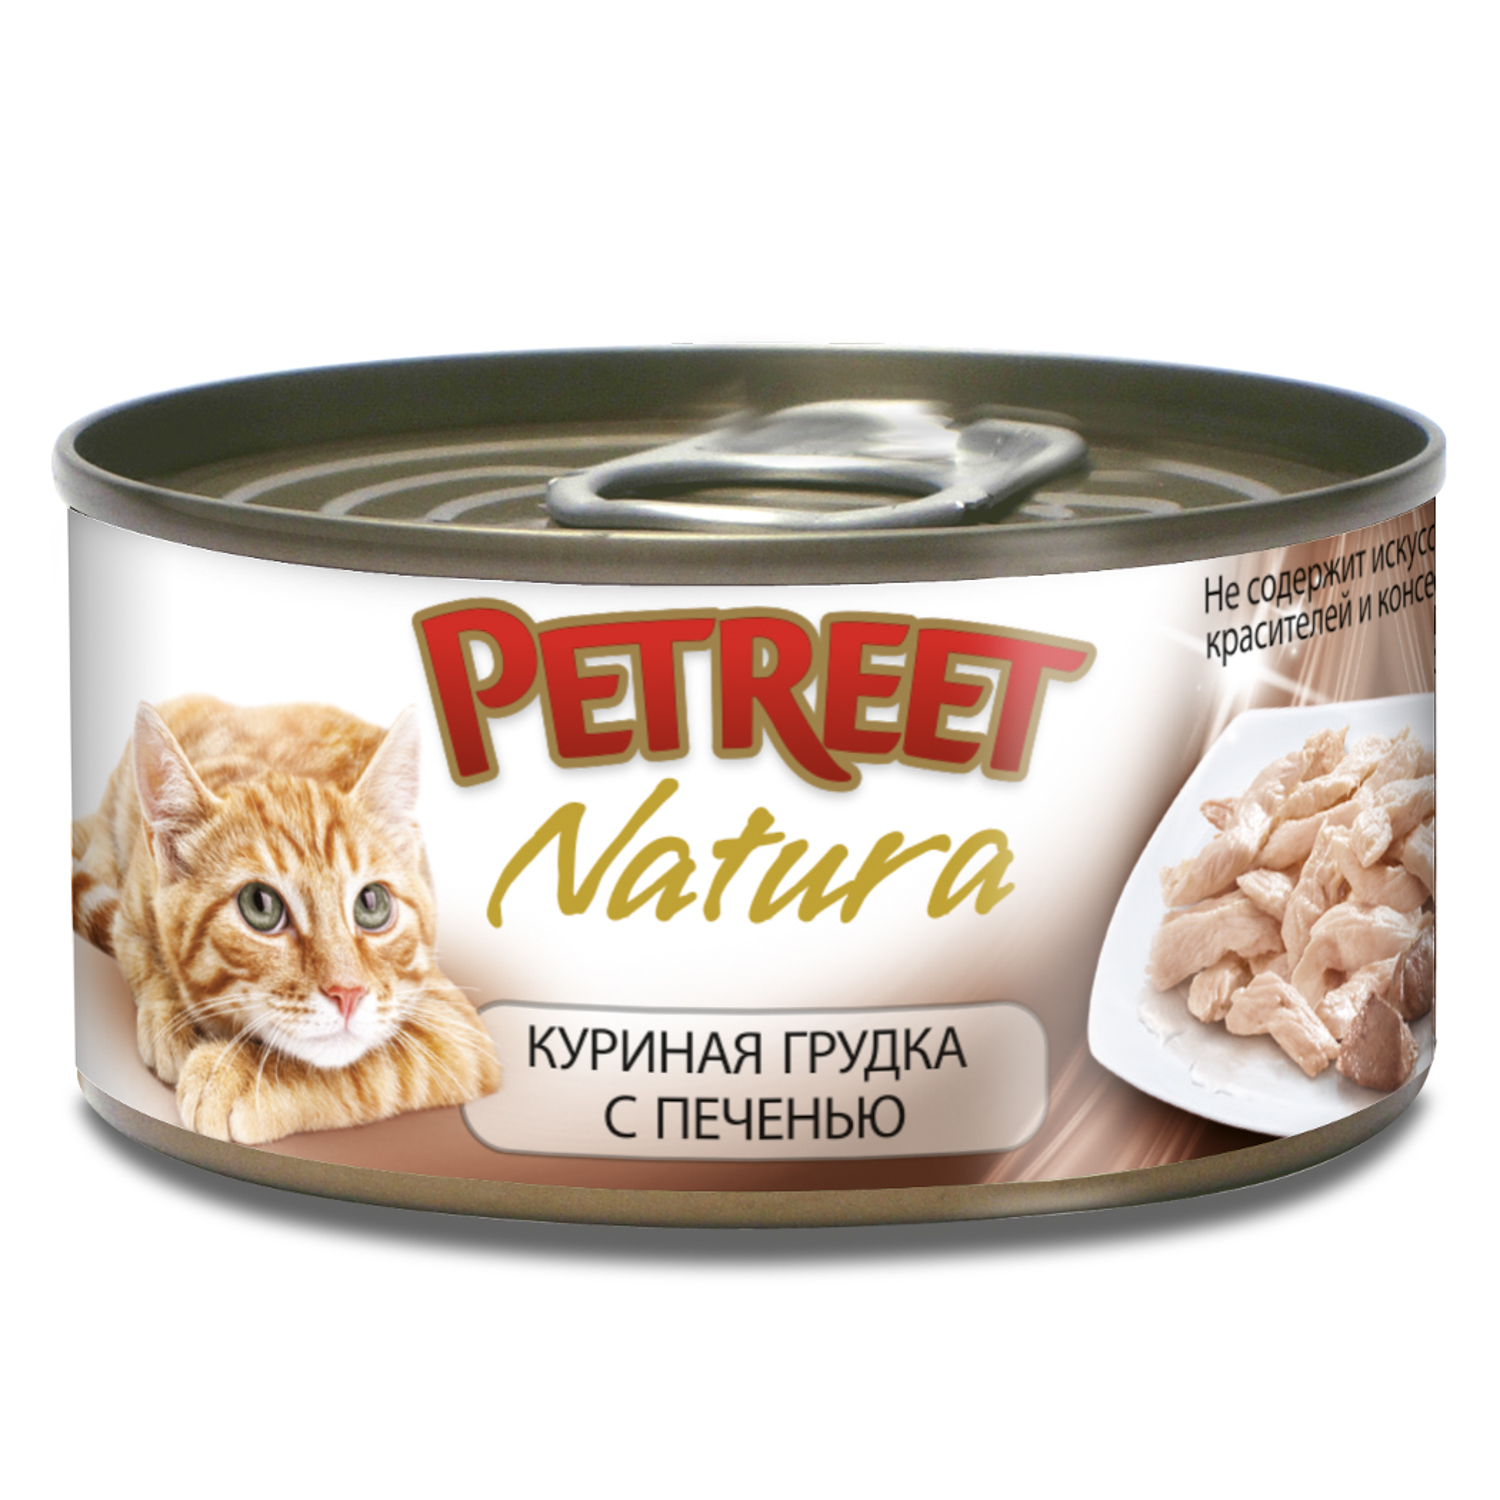 Корм влажный для кошек Petreet 70г куриная грудка с печенью консервированный - фото 1